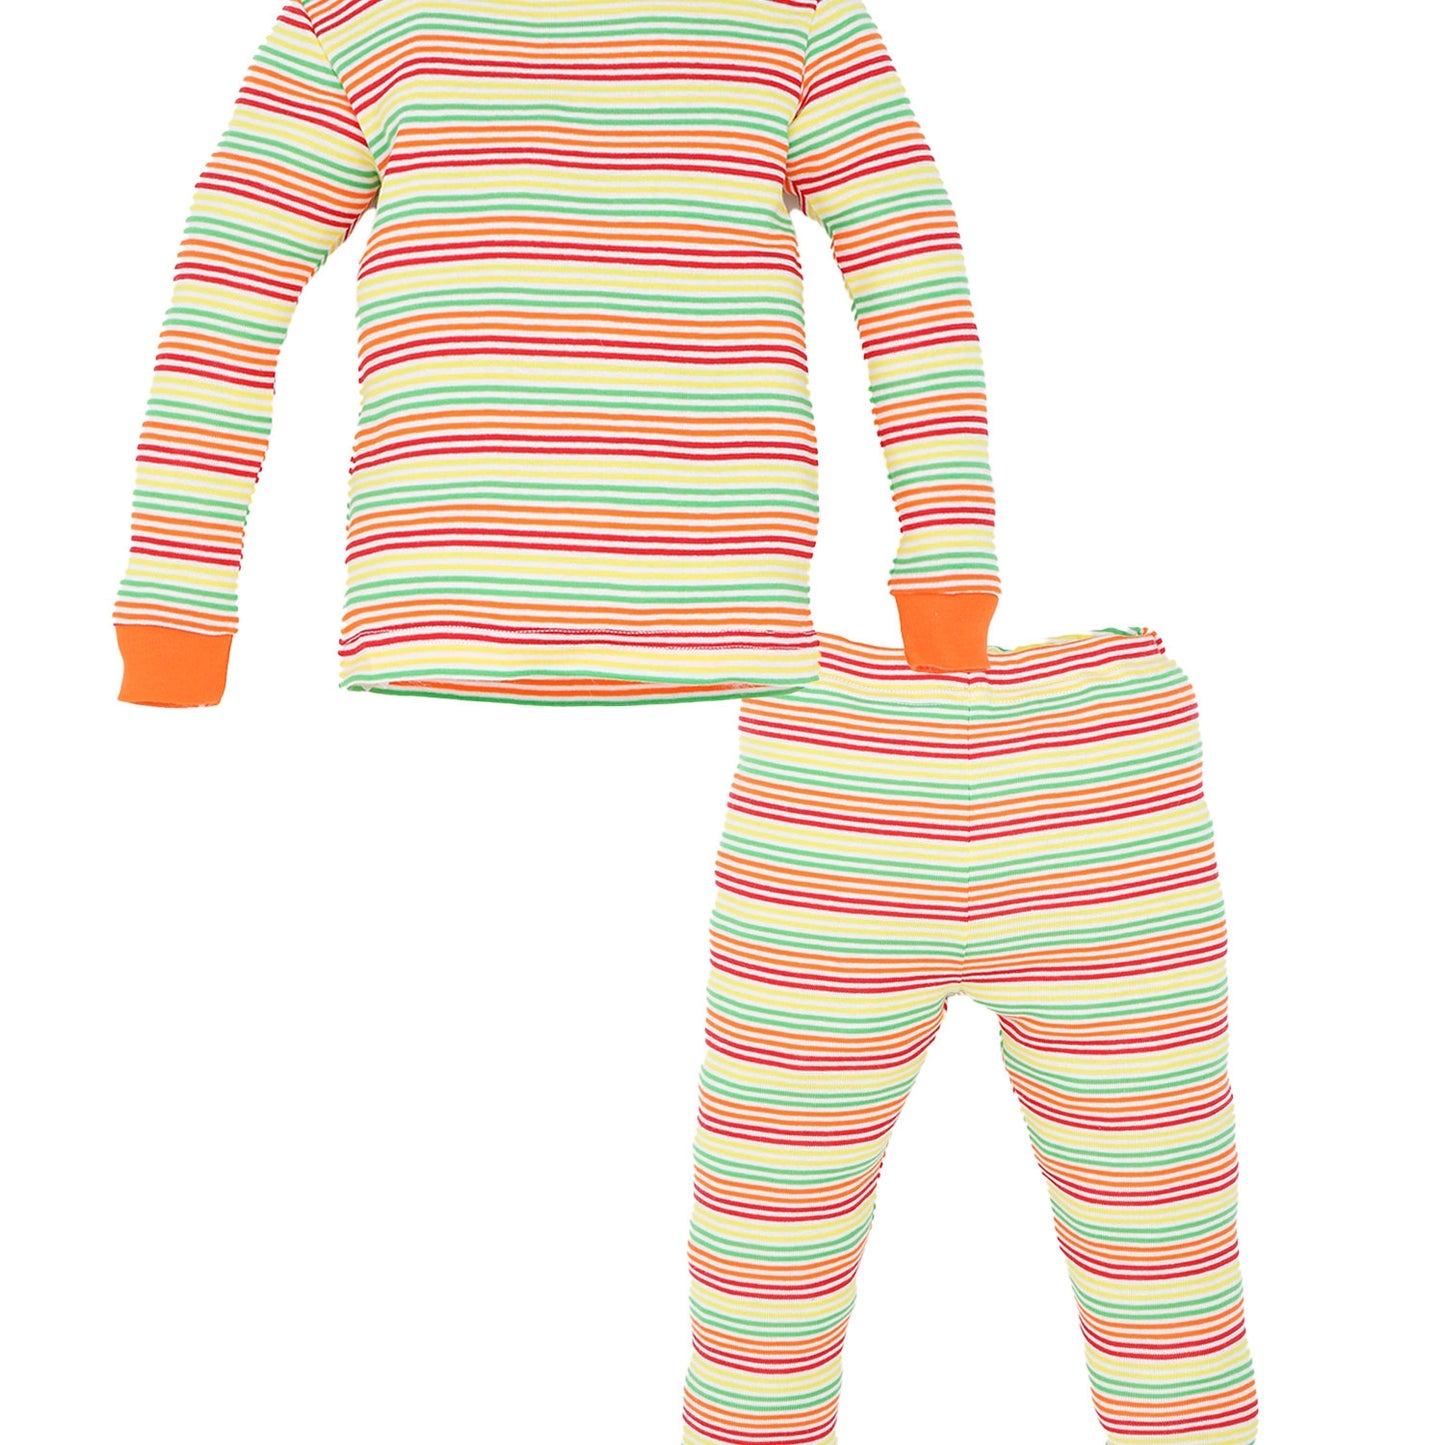 2 Piece Pajama (Long Sleeve) - Veggie Stripe